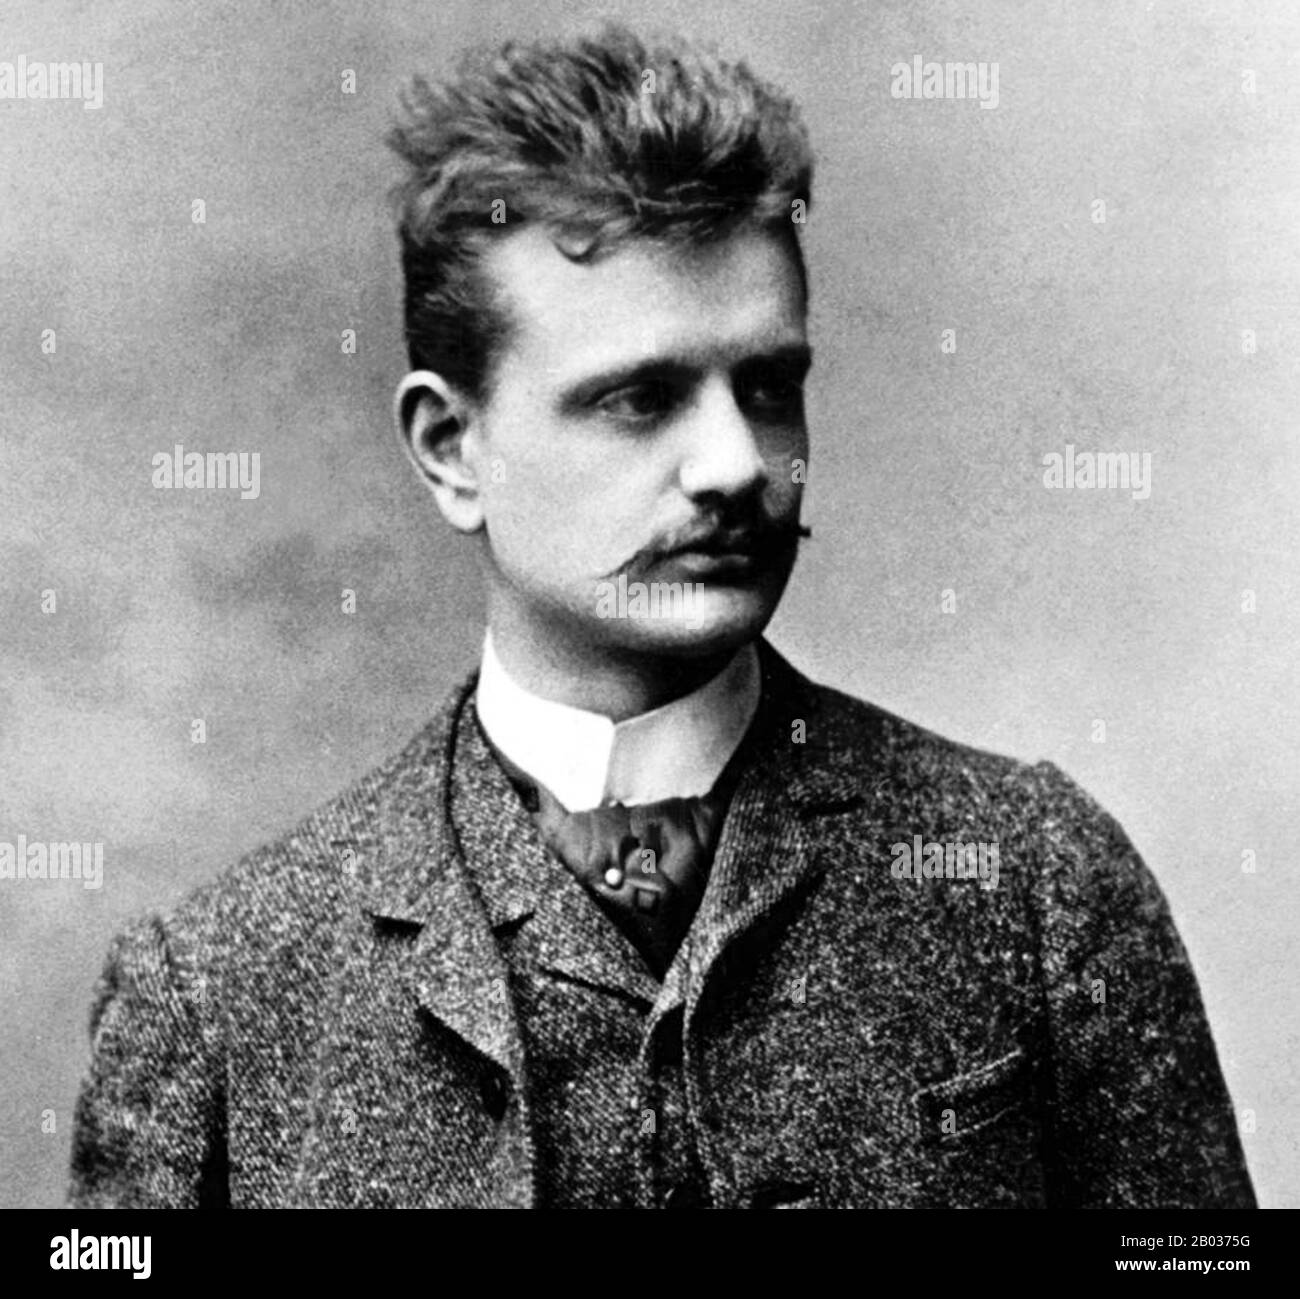 Jean Sibelius (né Johan Julius Christian Sibelius, du 8 décembre 1865 au 20 septembre 1957), est un compositeur et violoniste finlandais de la période romantique et moderne tardive. Il est largement reconnu comme le plus grand compositeur de son pays et, grâce à sa musique, il est souvent crédité d'avoir aidé la Finlande à développer une identité nationale pendant sa lutte pour l'indépendance de la Russie. Banque D'Images